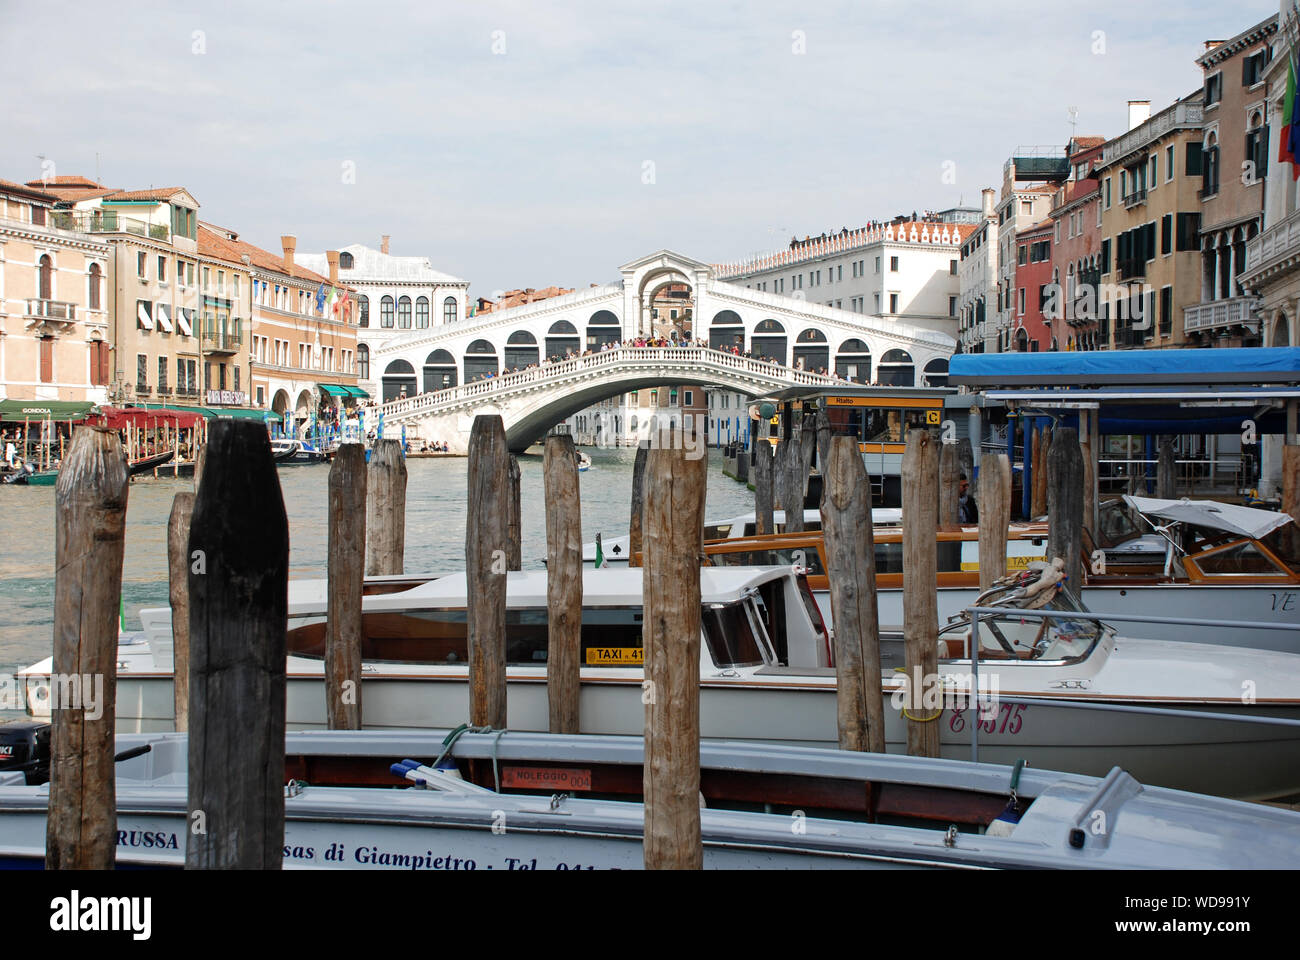 Rialto Bridge, Venice, Italy Stock Photo